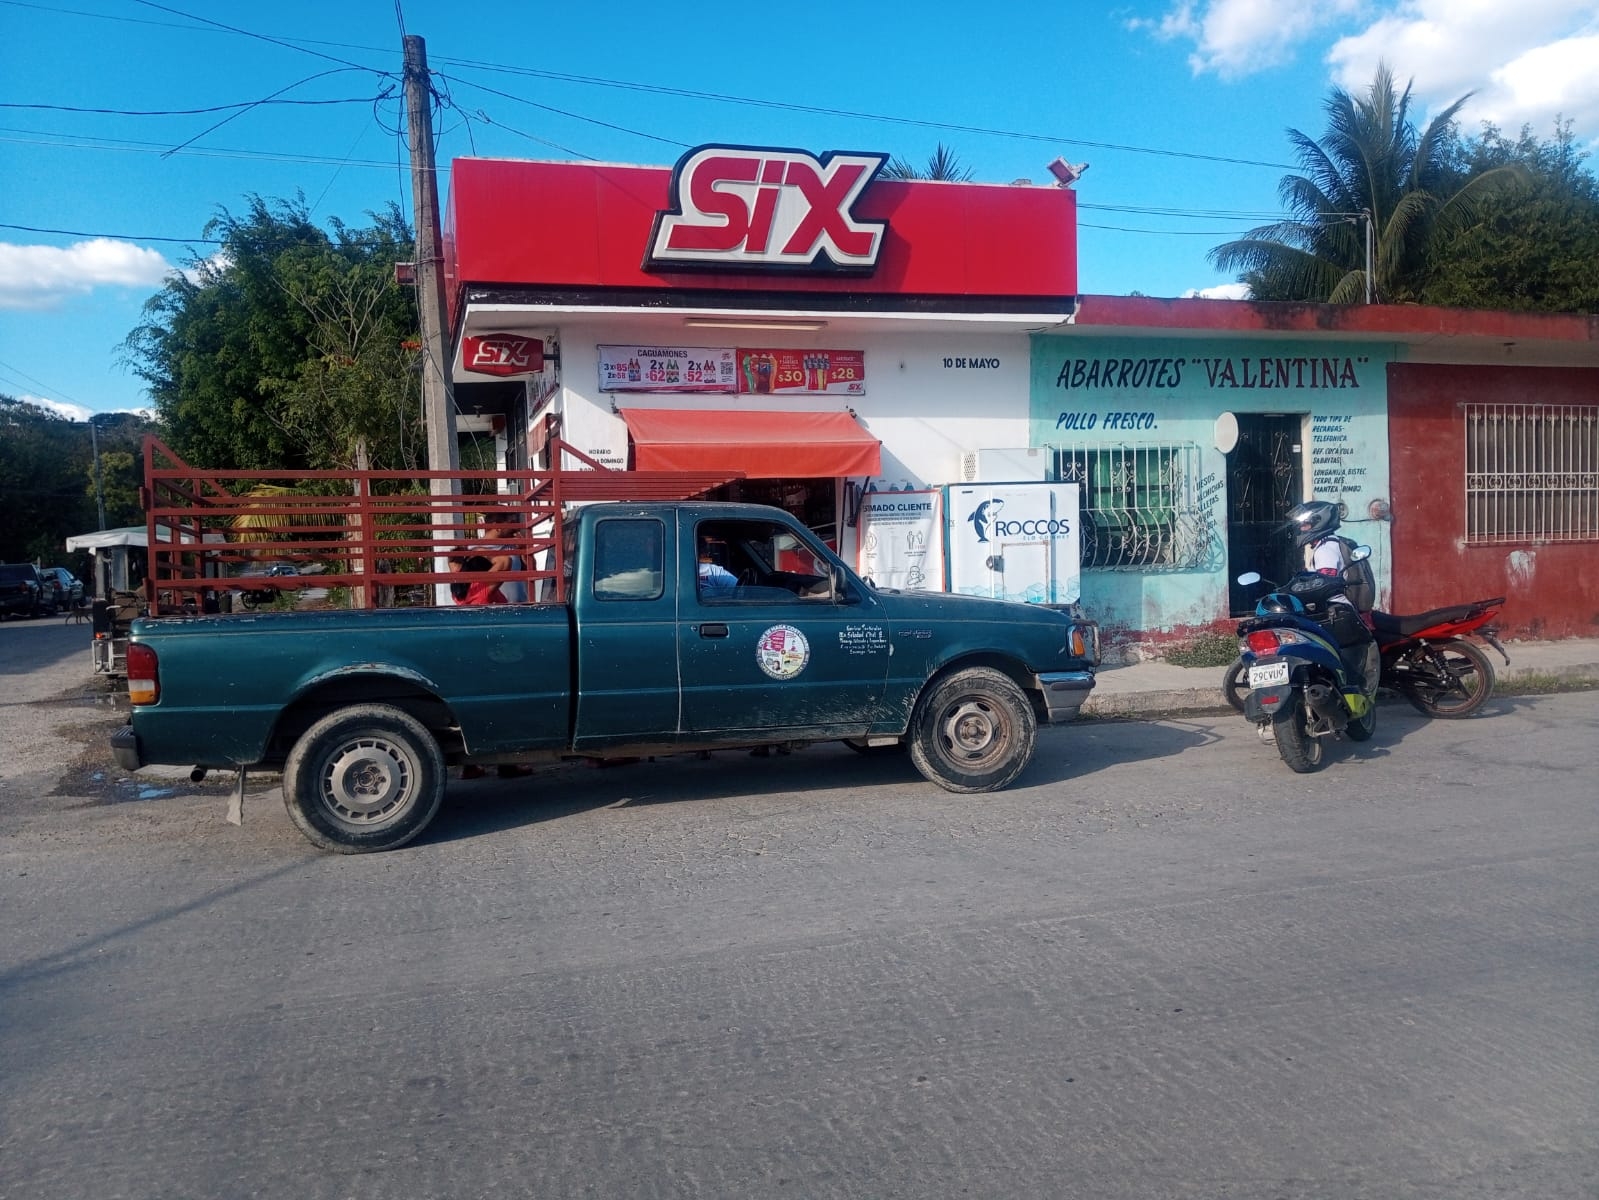 Hombres armados roban 20 mil pesos en una tienda Six en Escárcega, Campeche